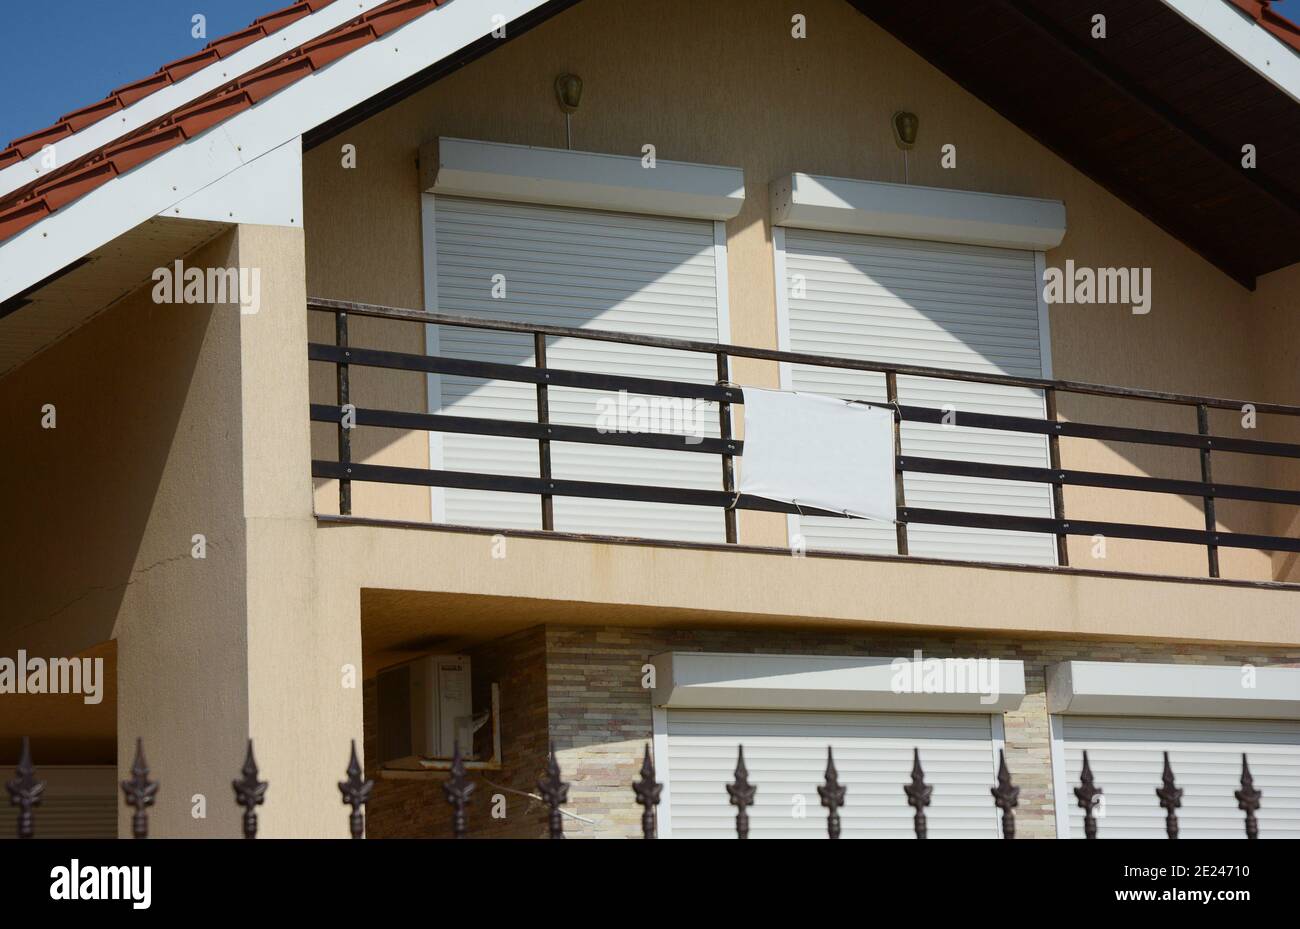 Eine Außenansicht des großen Dachgeschosses, Dachfenster geschlossen mit pvc-motorisierten Fensterrollläden, die zum offenen Balkon eines Hauses führen. Stockfoto